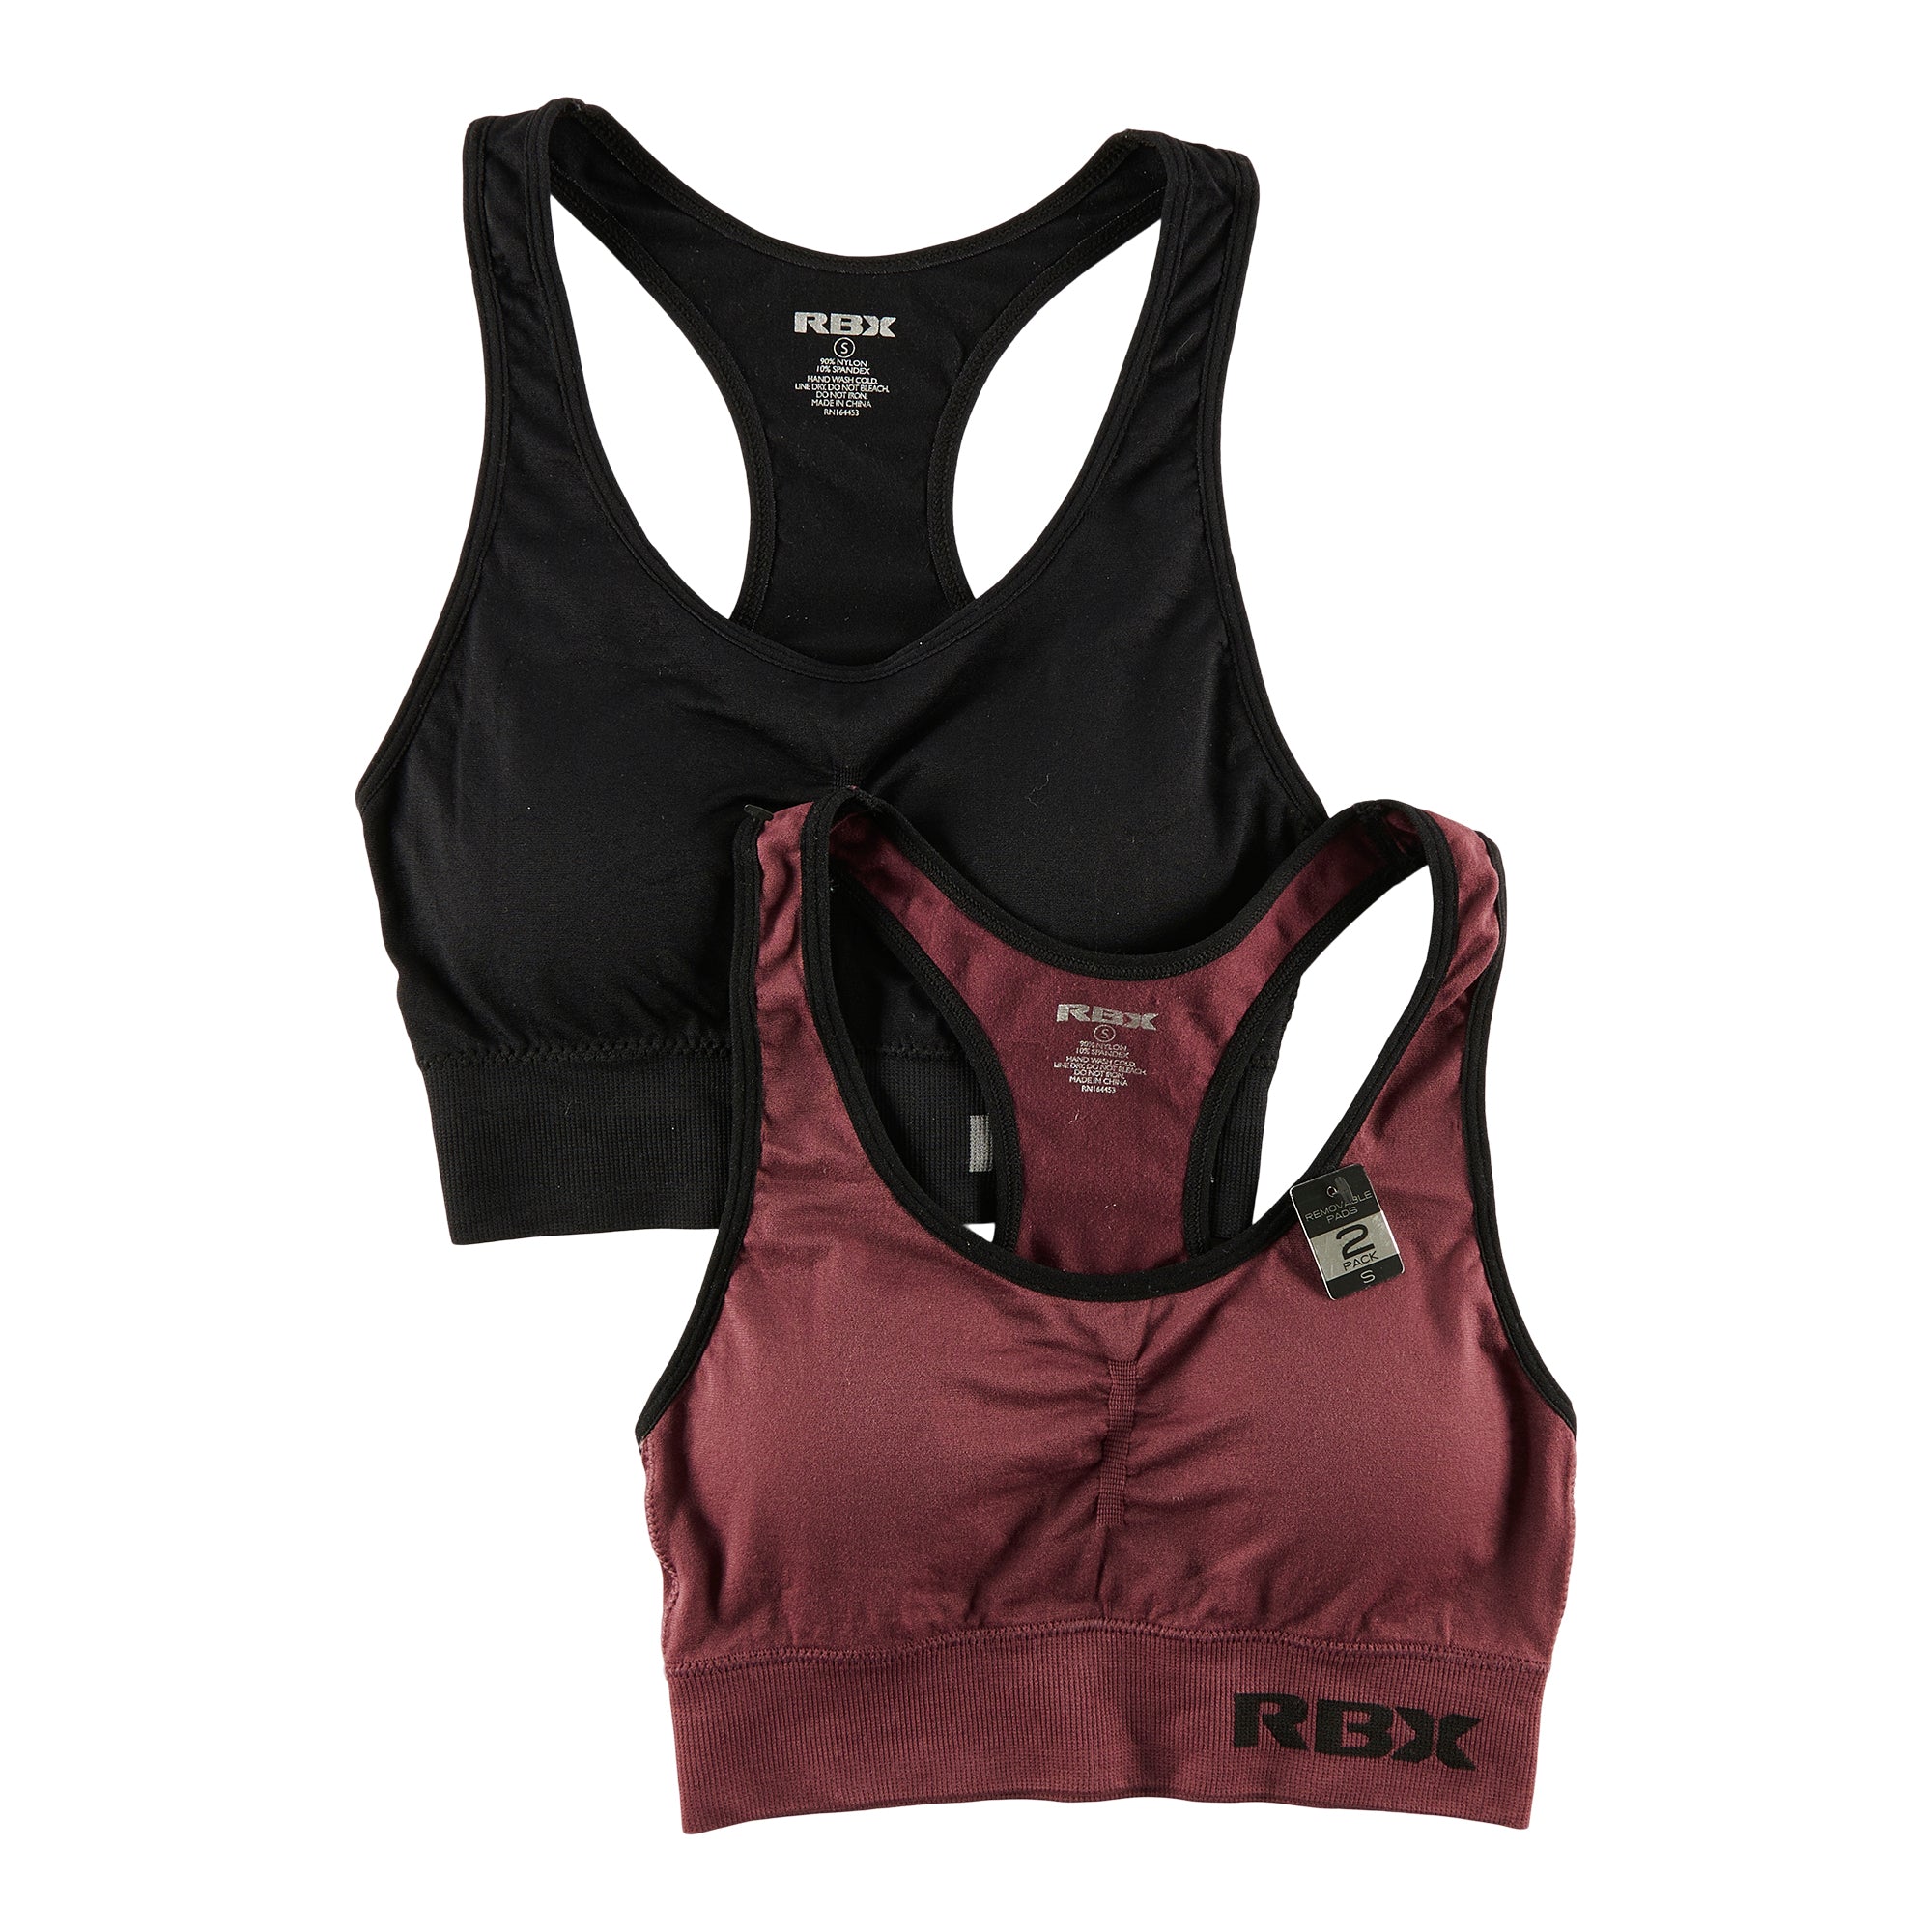 RBX, Intimates & Sleepwear, Rbx Black And Grey Sports Bra Size Small